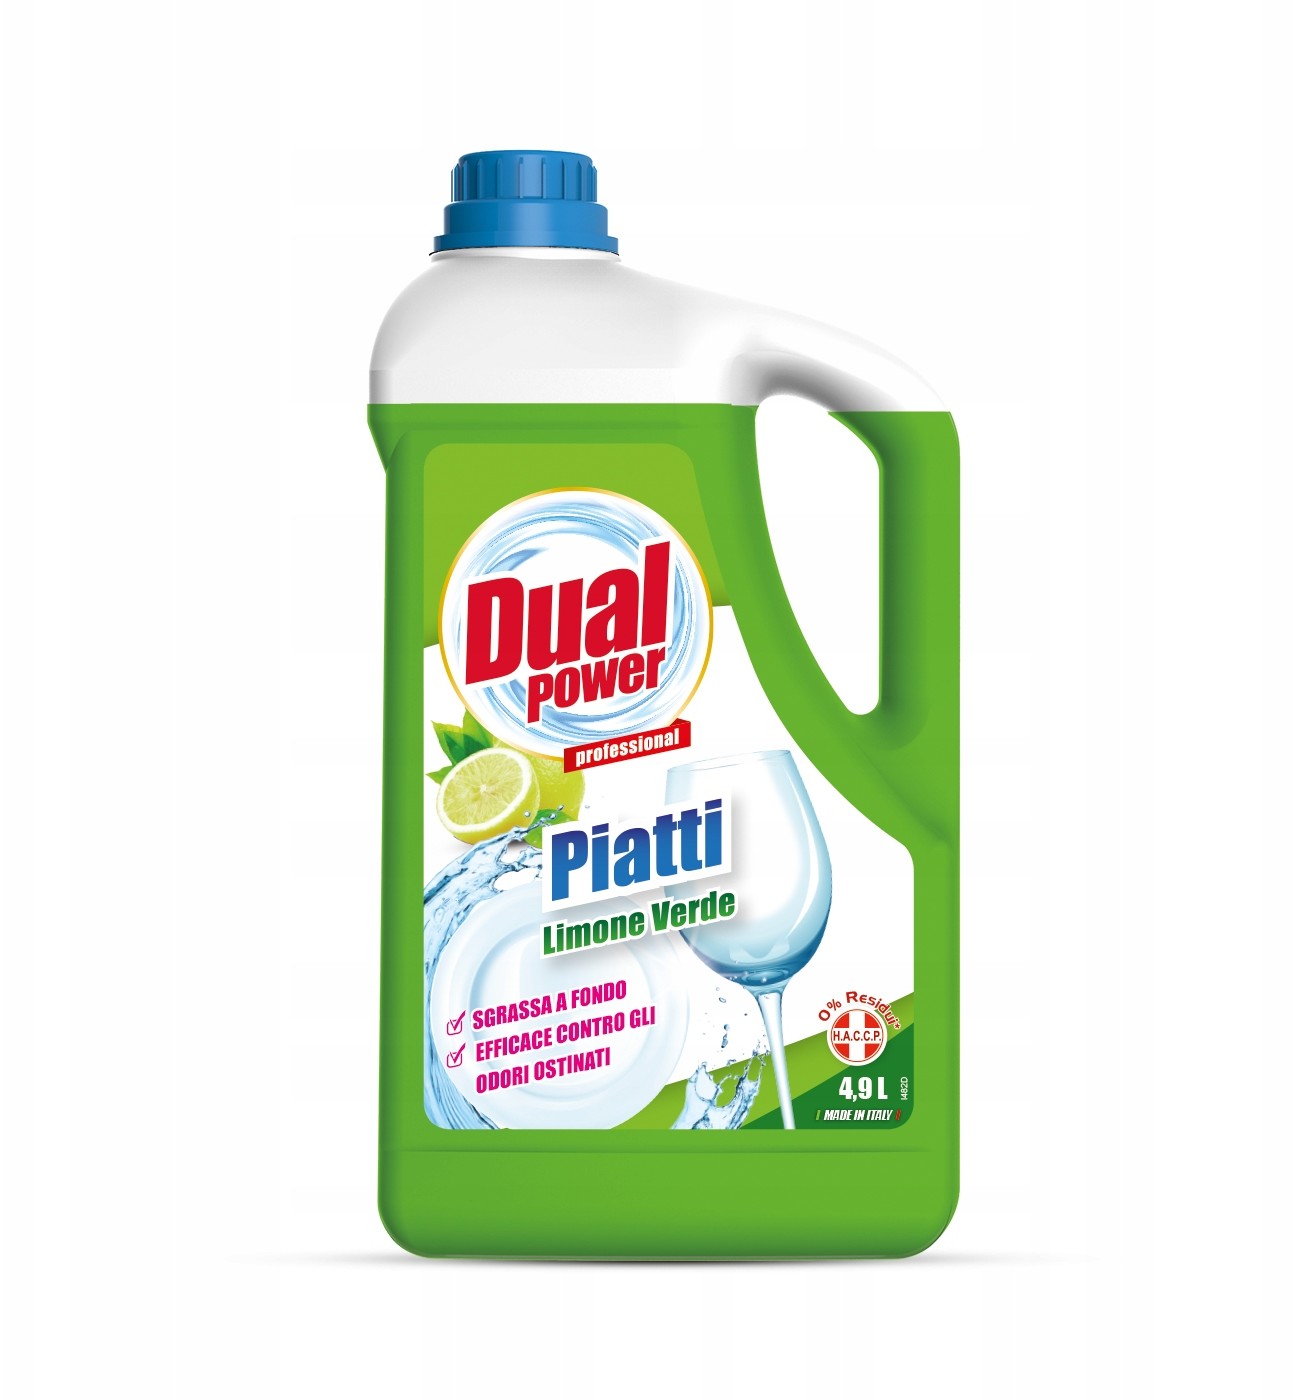 Zdjęcia - Ręczne zmywanie naczyń Dual Power Piatti Limone Verde - płyn do mycia naczyń zielona cytryna (4,9 